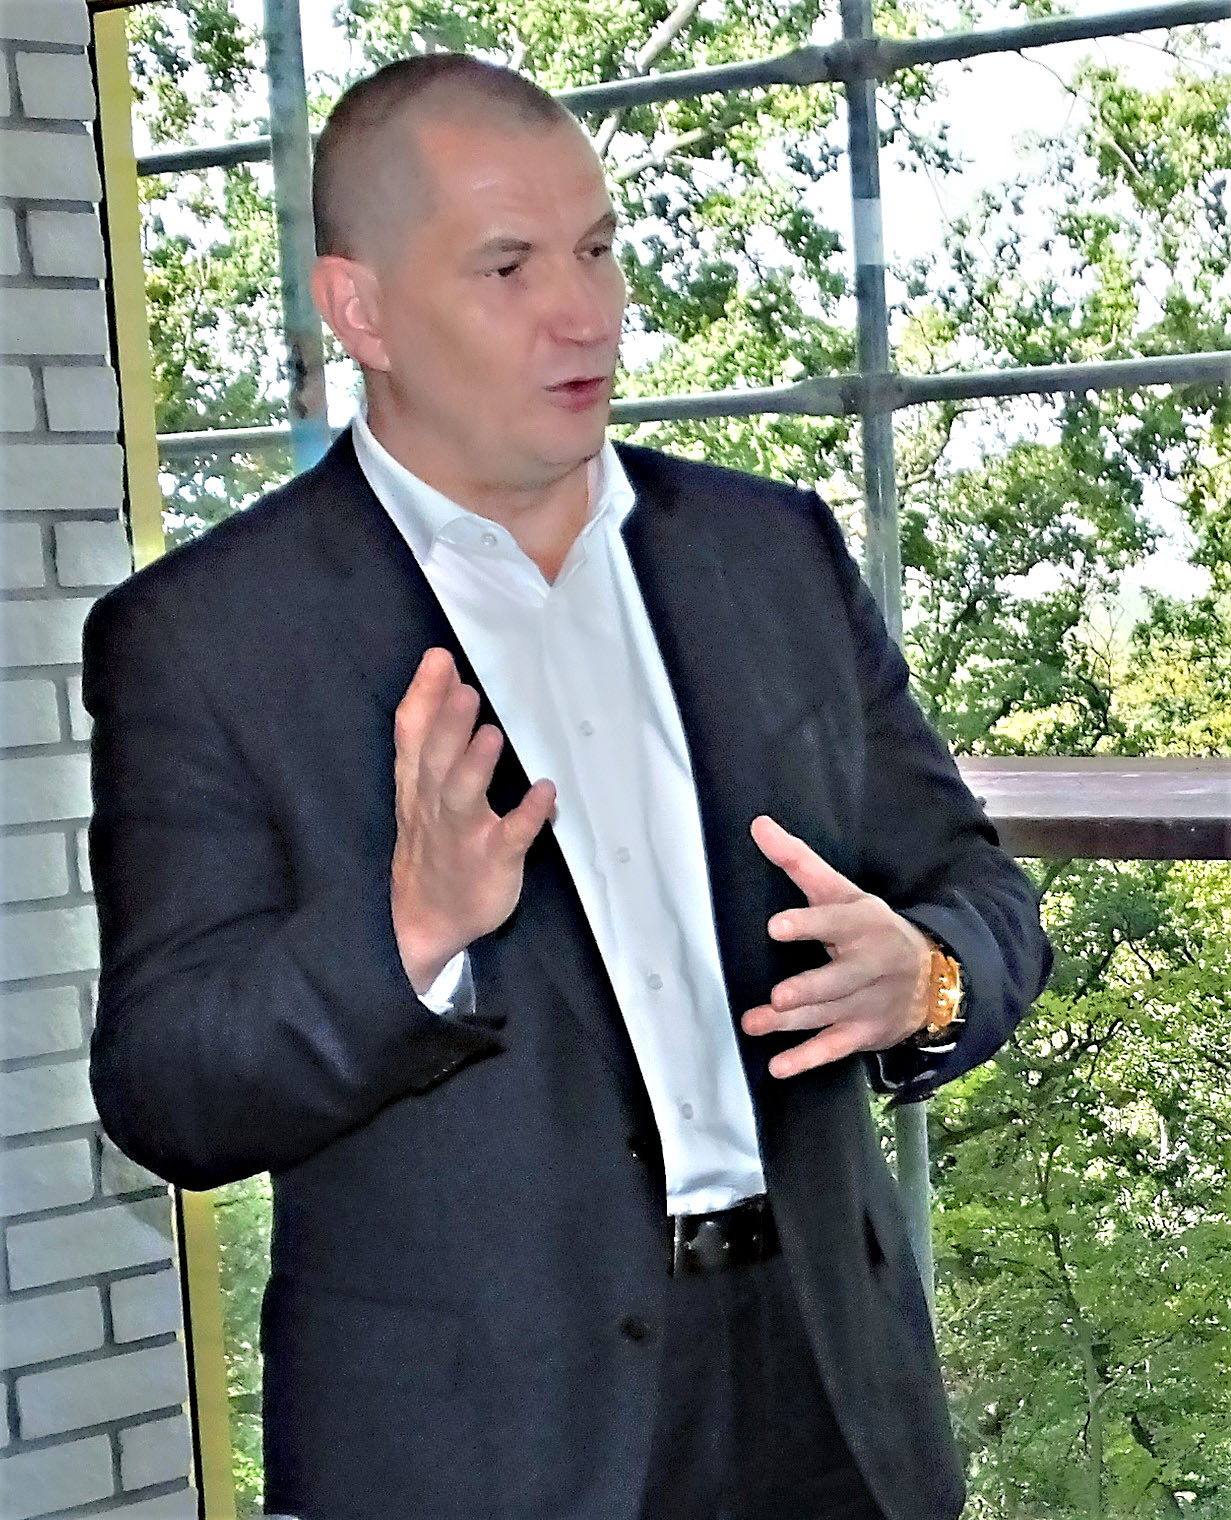 Der Investor und Inhaber Matthias Große redete Klartext.